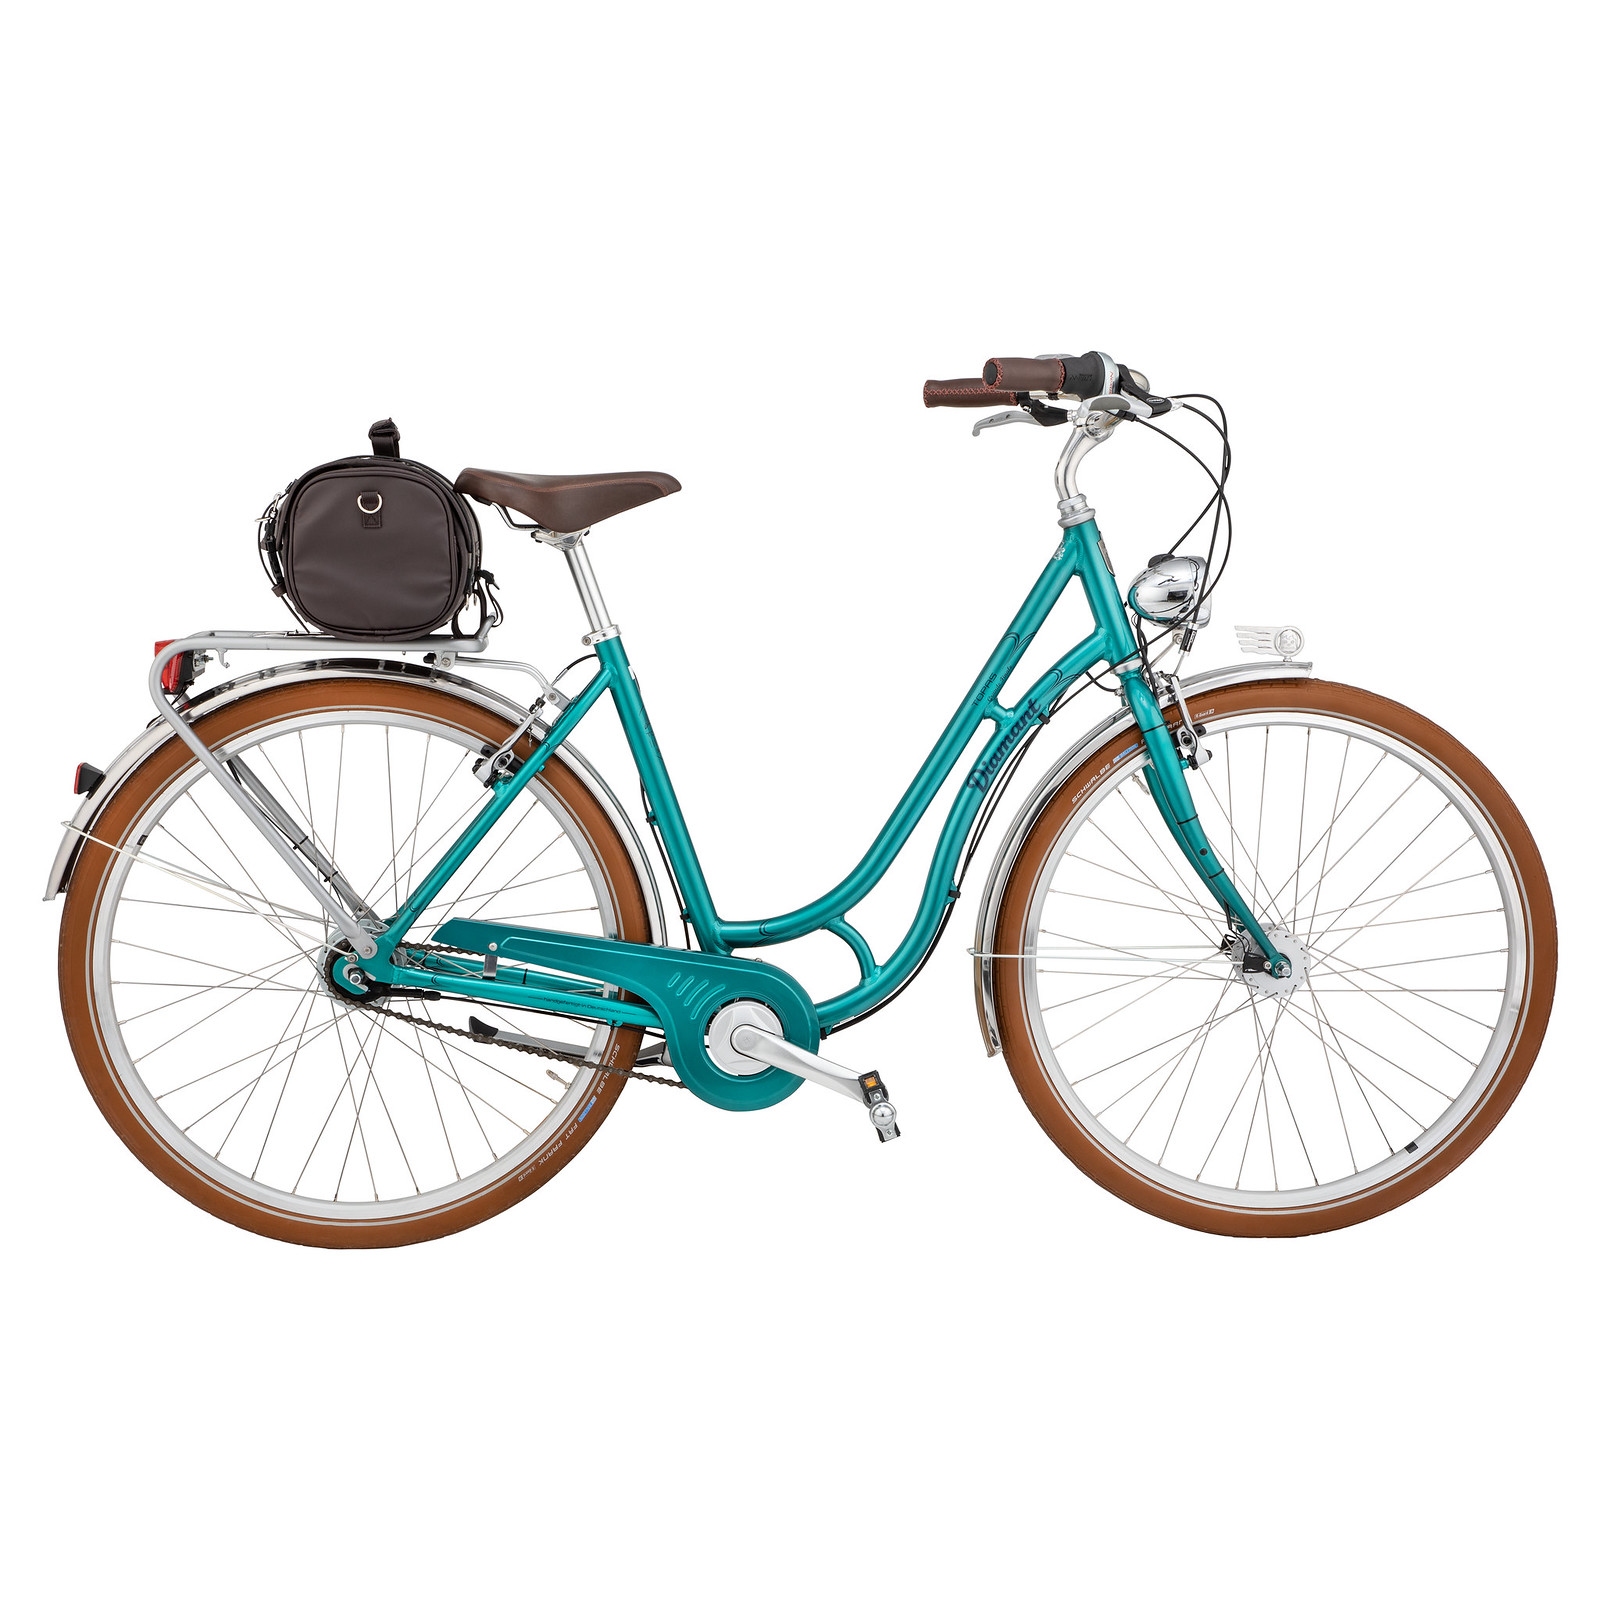 Klassische Taschen & Körbe für Fahrrad und E-Bike